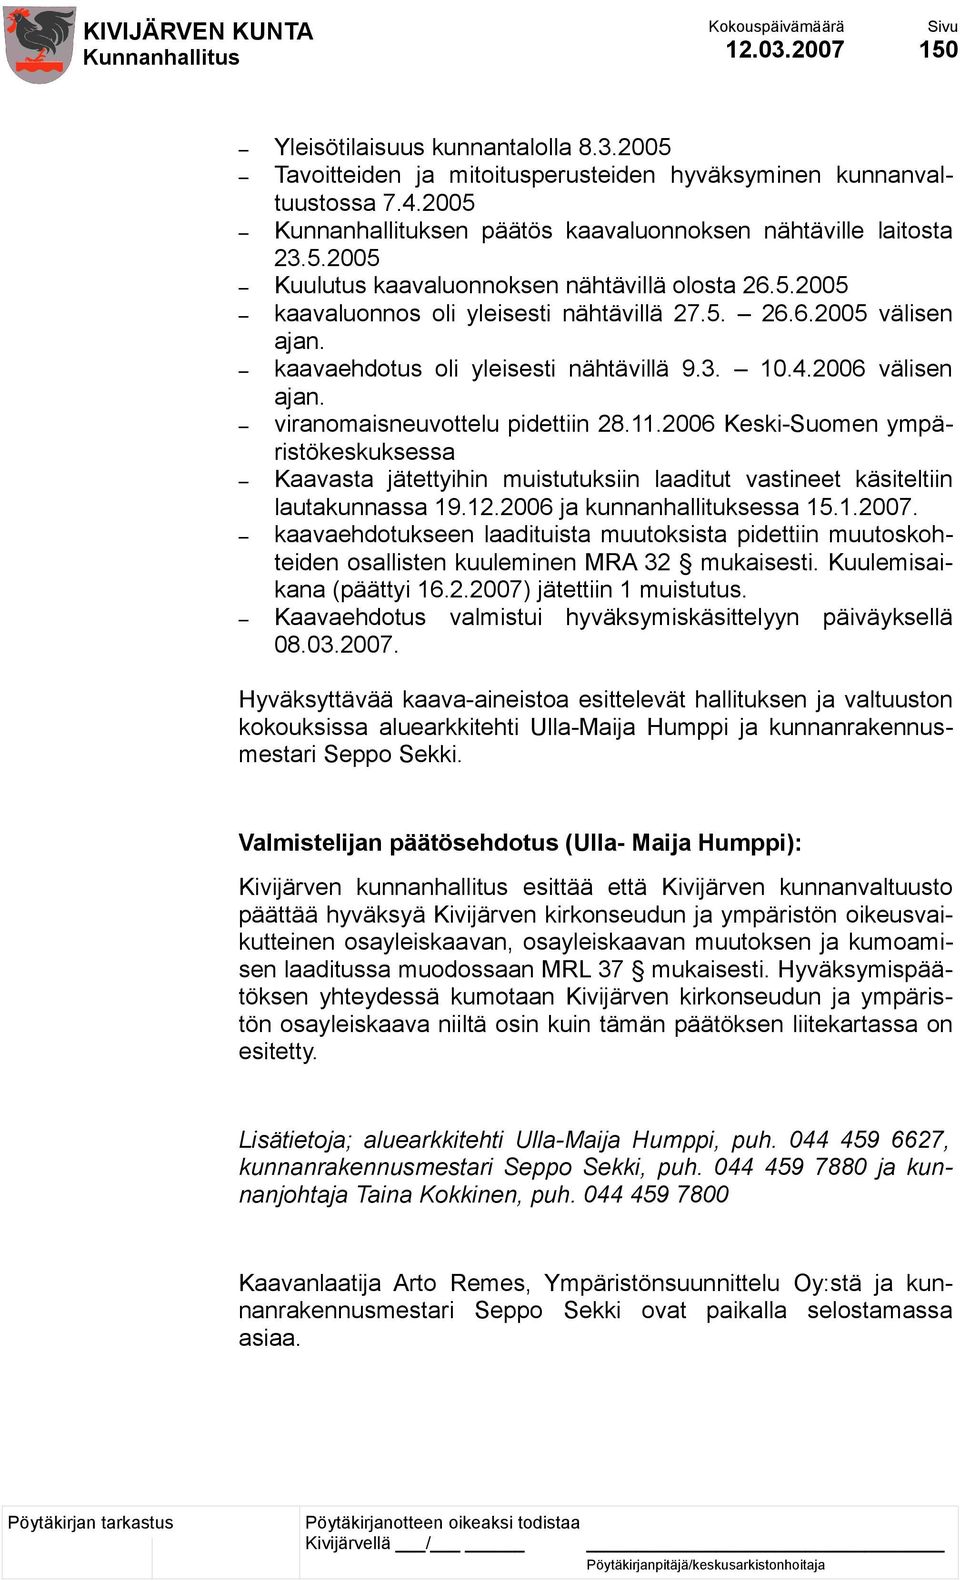 2006 Keski-Suomen ympäristökeskuksessa Kaavasta jätettyihin muistutuksiin laaditut vastineet käsiteltiin lautakunnassa 19.12.2006 ja kunnanhallituksessa 15.1.2007.